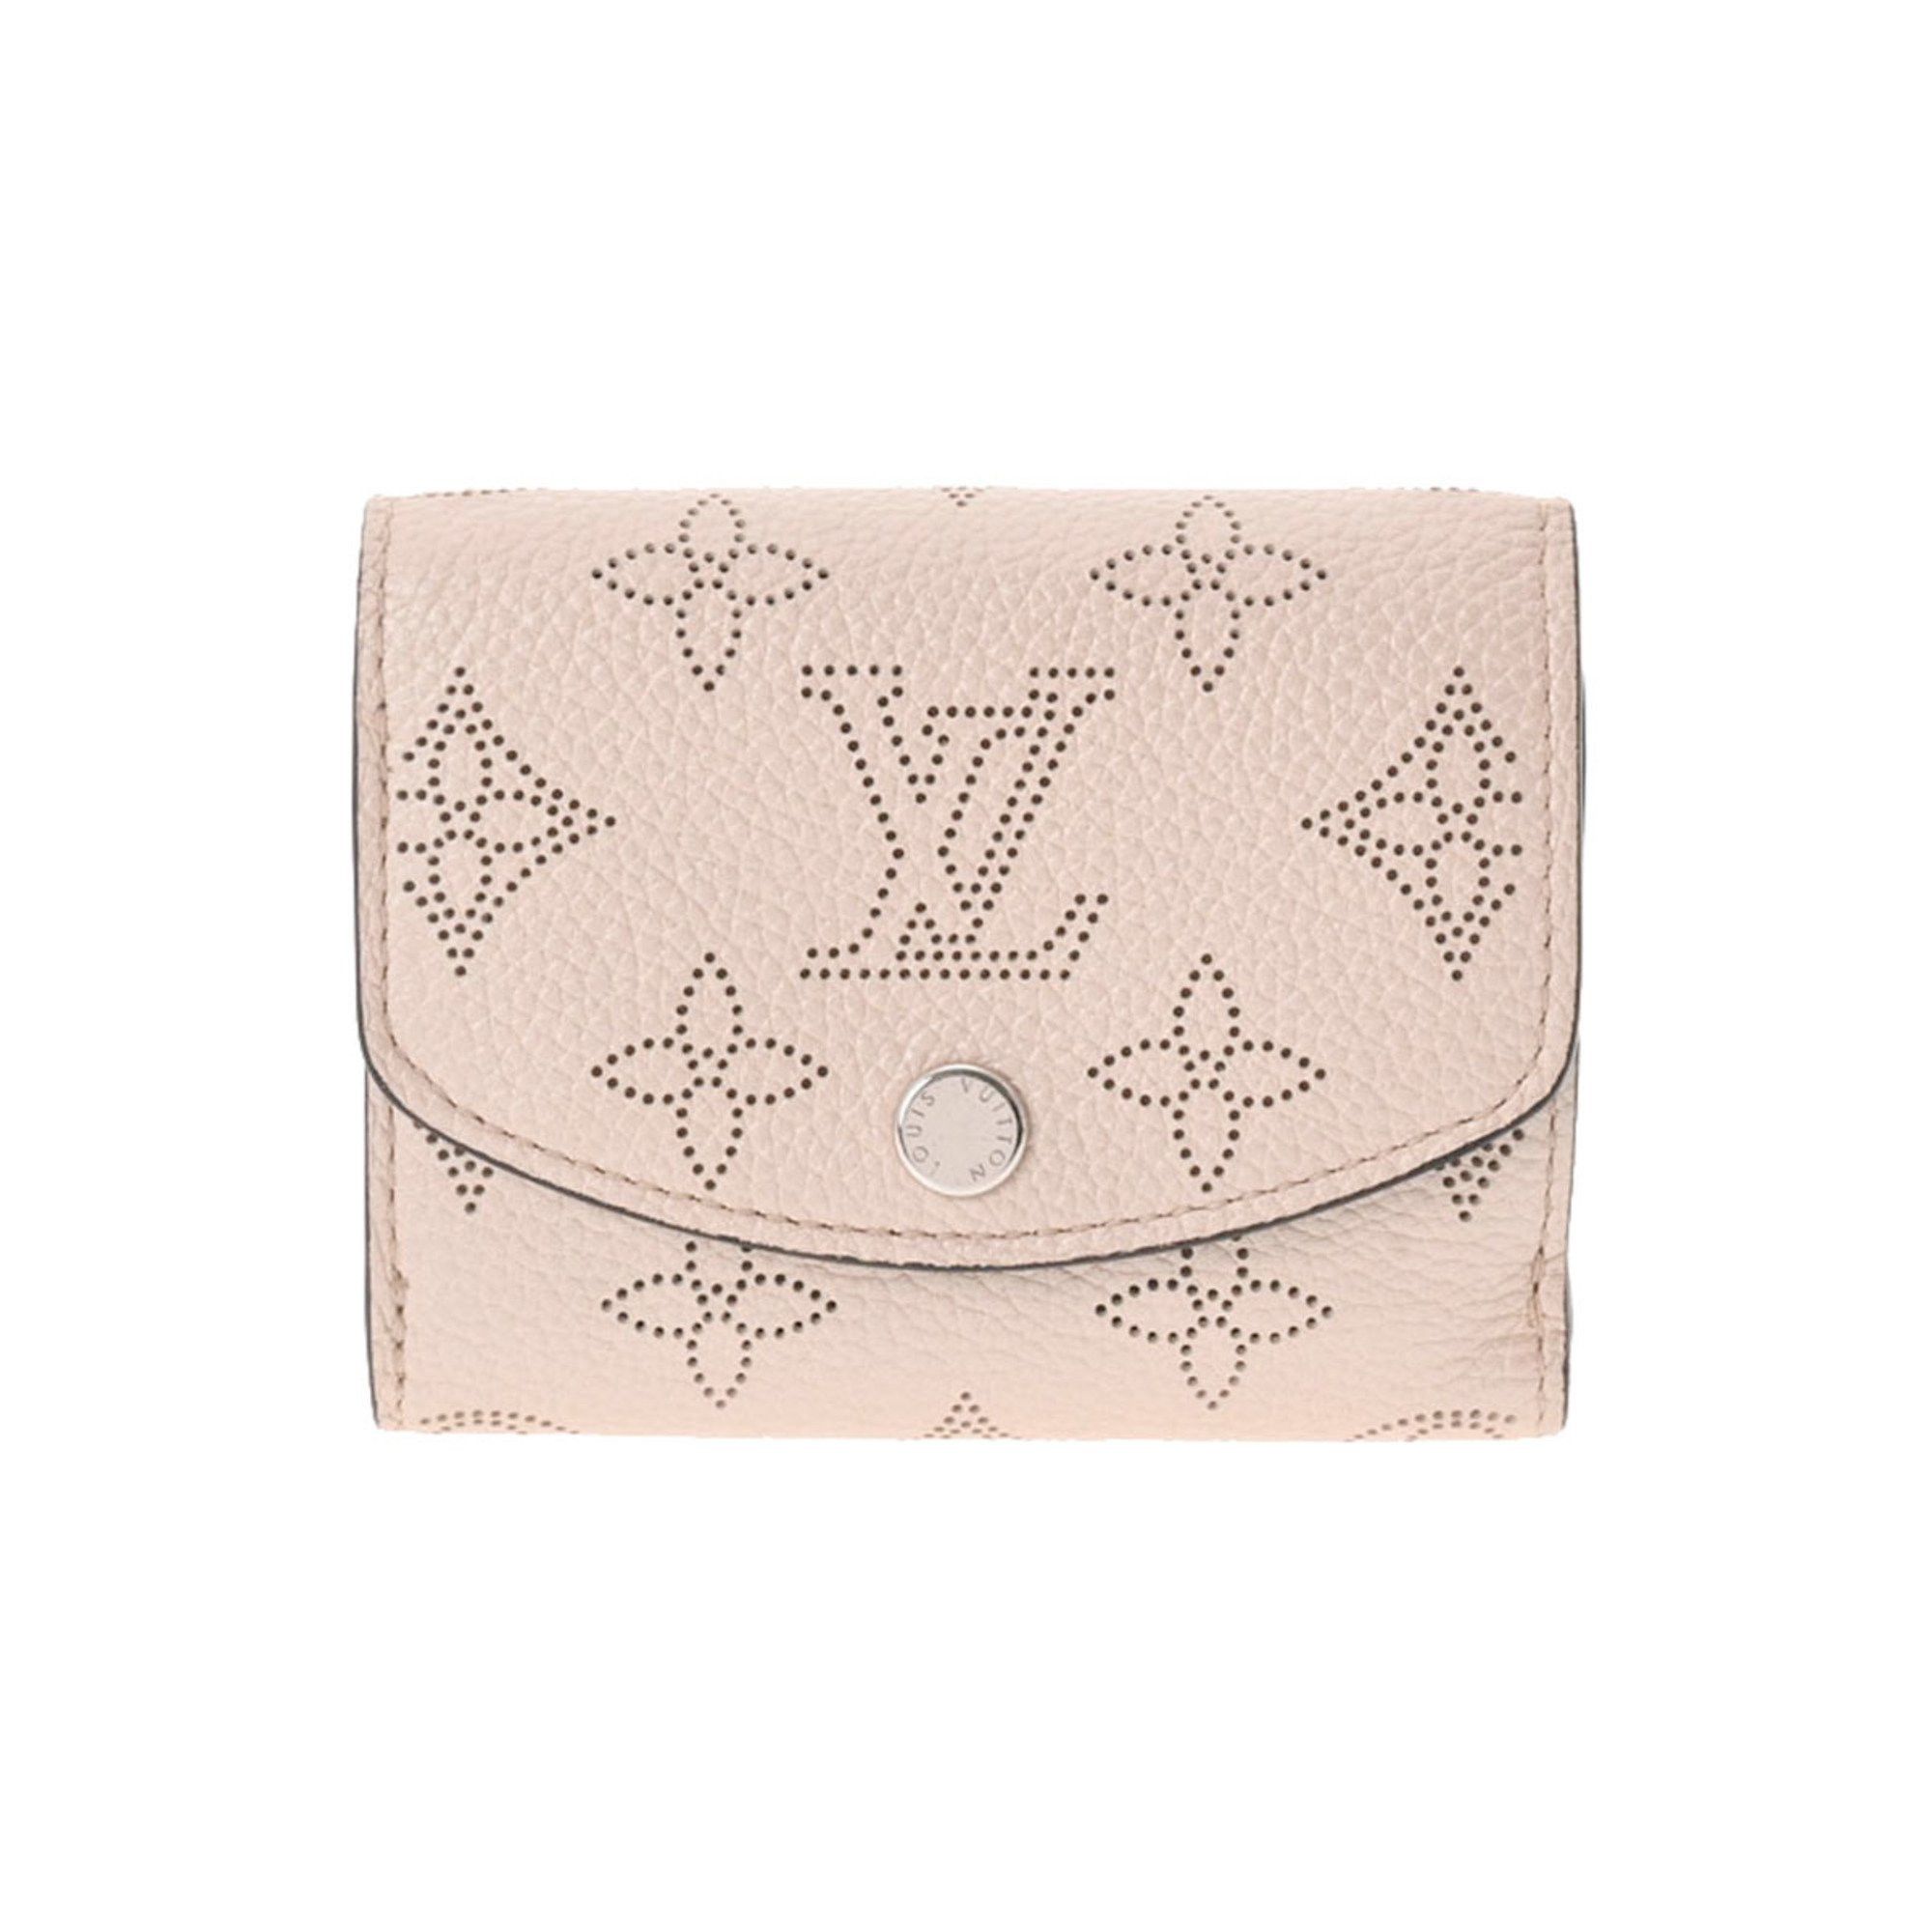 LOUIS VUITTON Louis Vuitton Portefeuille Iris Compact Monogram